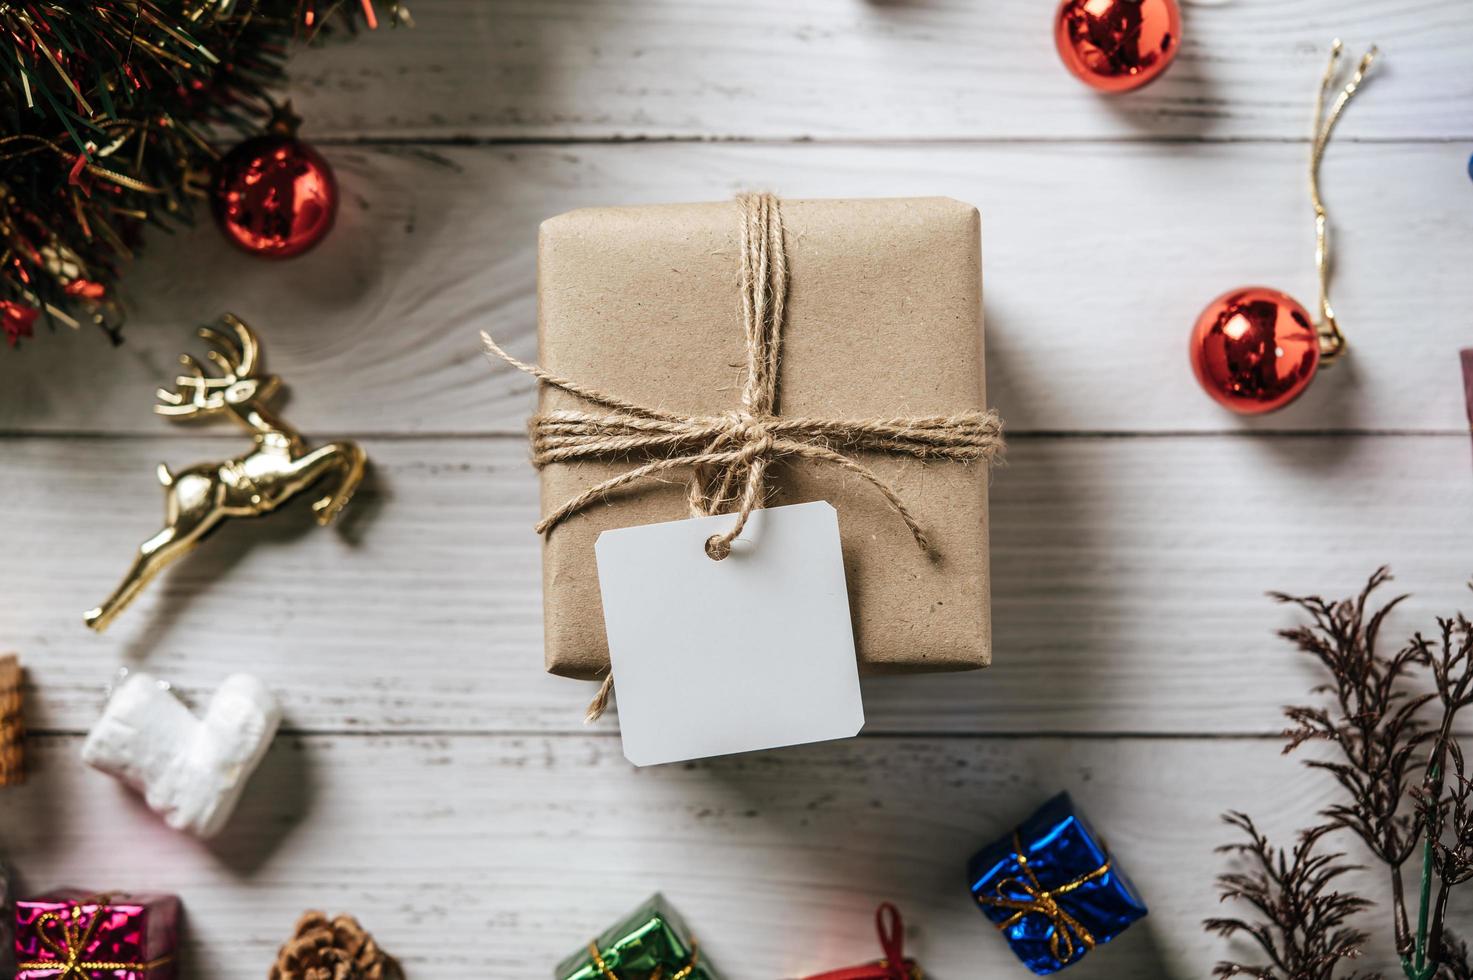 Caja de regalo con un pequeño regalo sobre un fondo de madera blanca foto